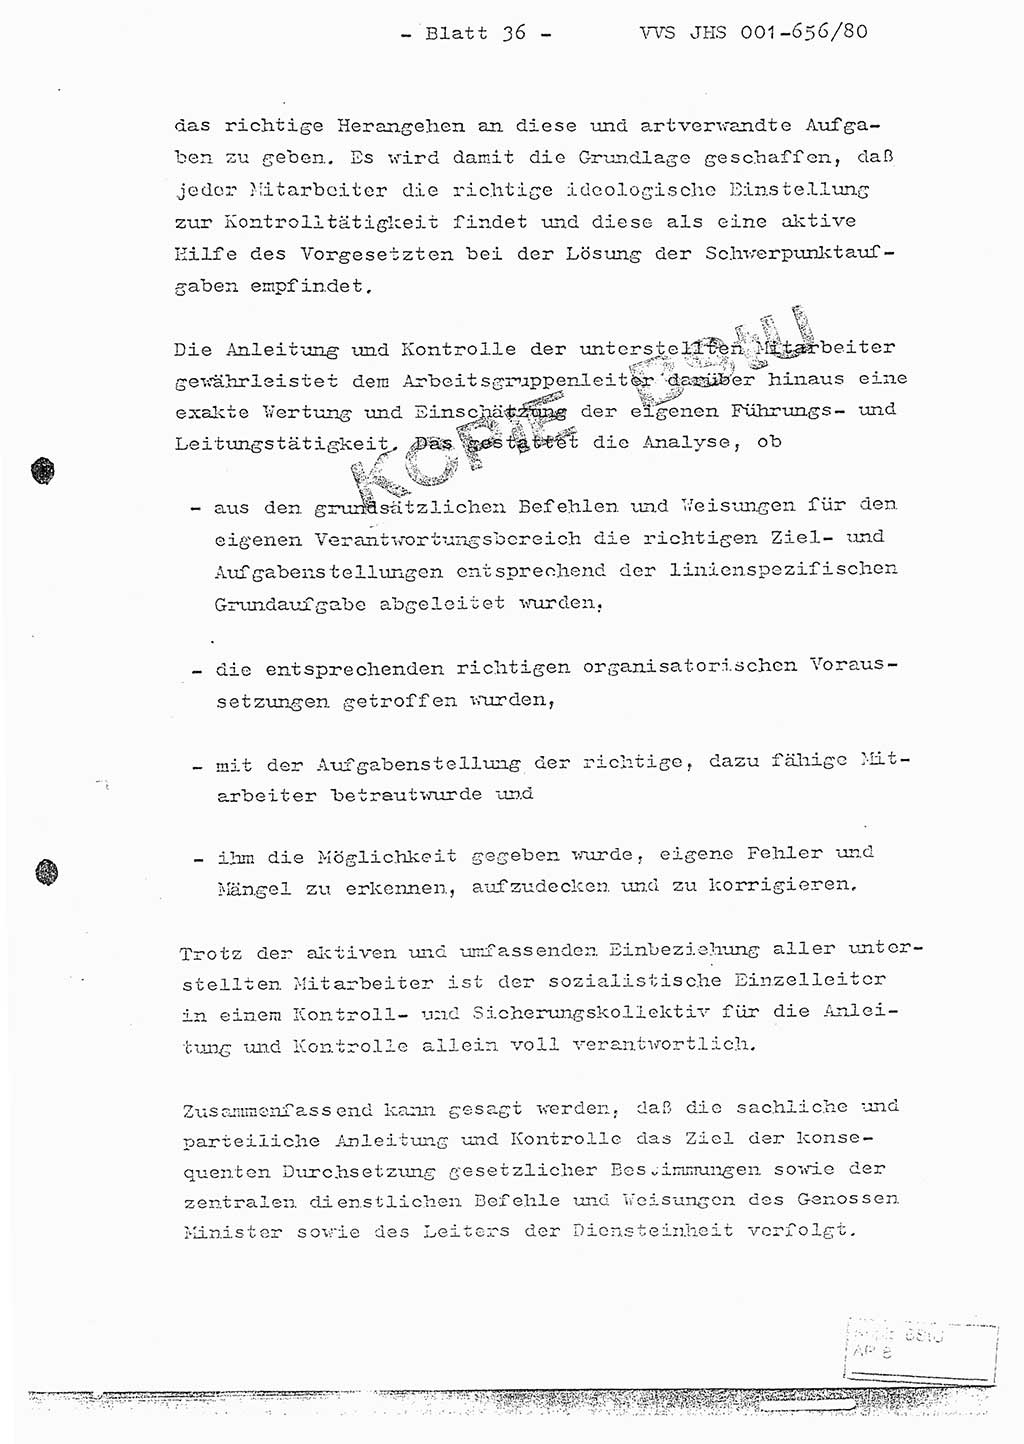 Fachschulabschlußarbeit Unterleutnant Christian Kätzel (Abt. ⅩⅣ), Ministerium für Staatssicherheit (MfS) [Deutsche Demokratische Republik (DDR)], Juristische Hochschule (JHS), Vertrauliche Verschlußsache (VVS) 001-656/80, Potsdam 1980, Blatt 36 (FS-Abschl.-Arb. MfS DDR JHS VVS 001-656/80 1980, Bl. 36)